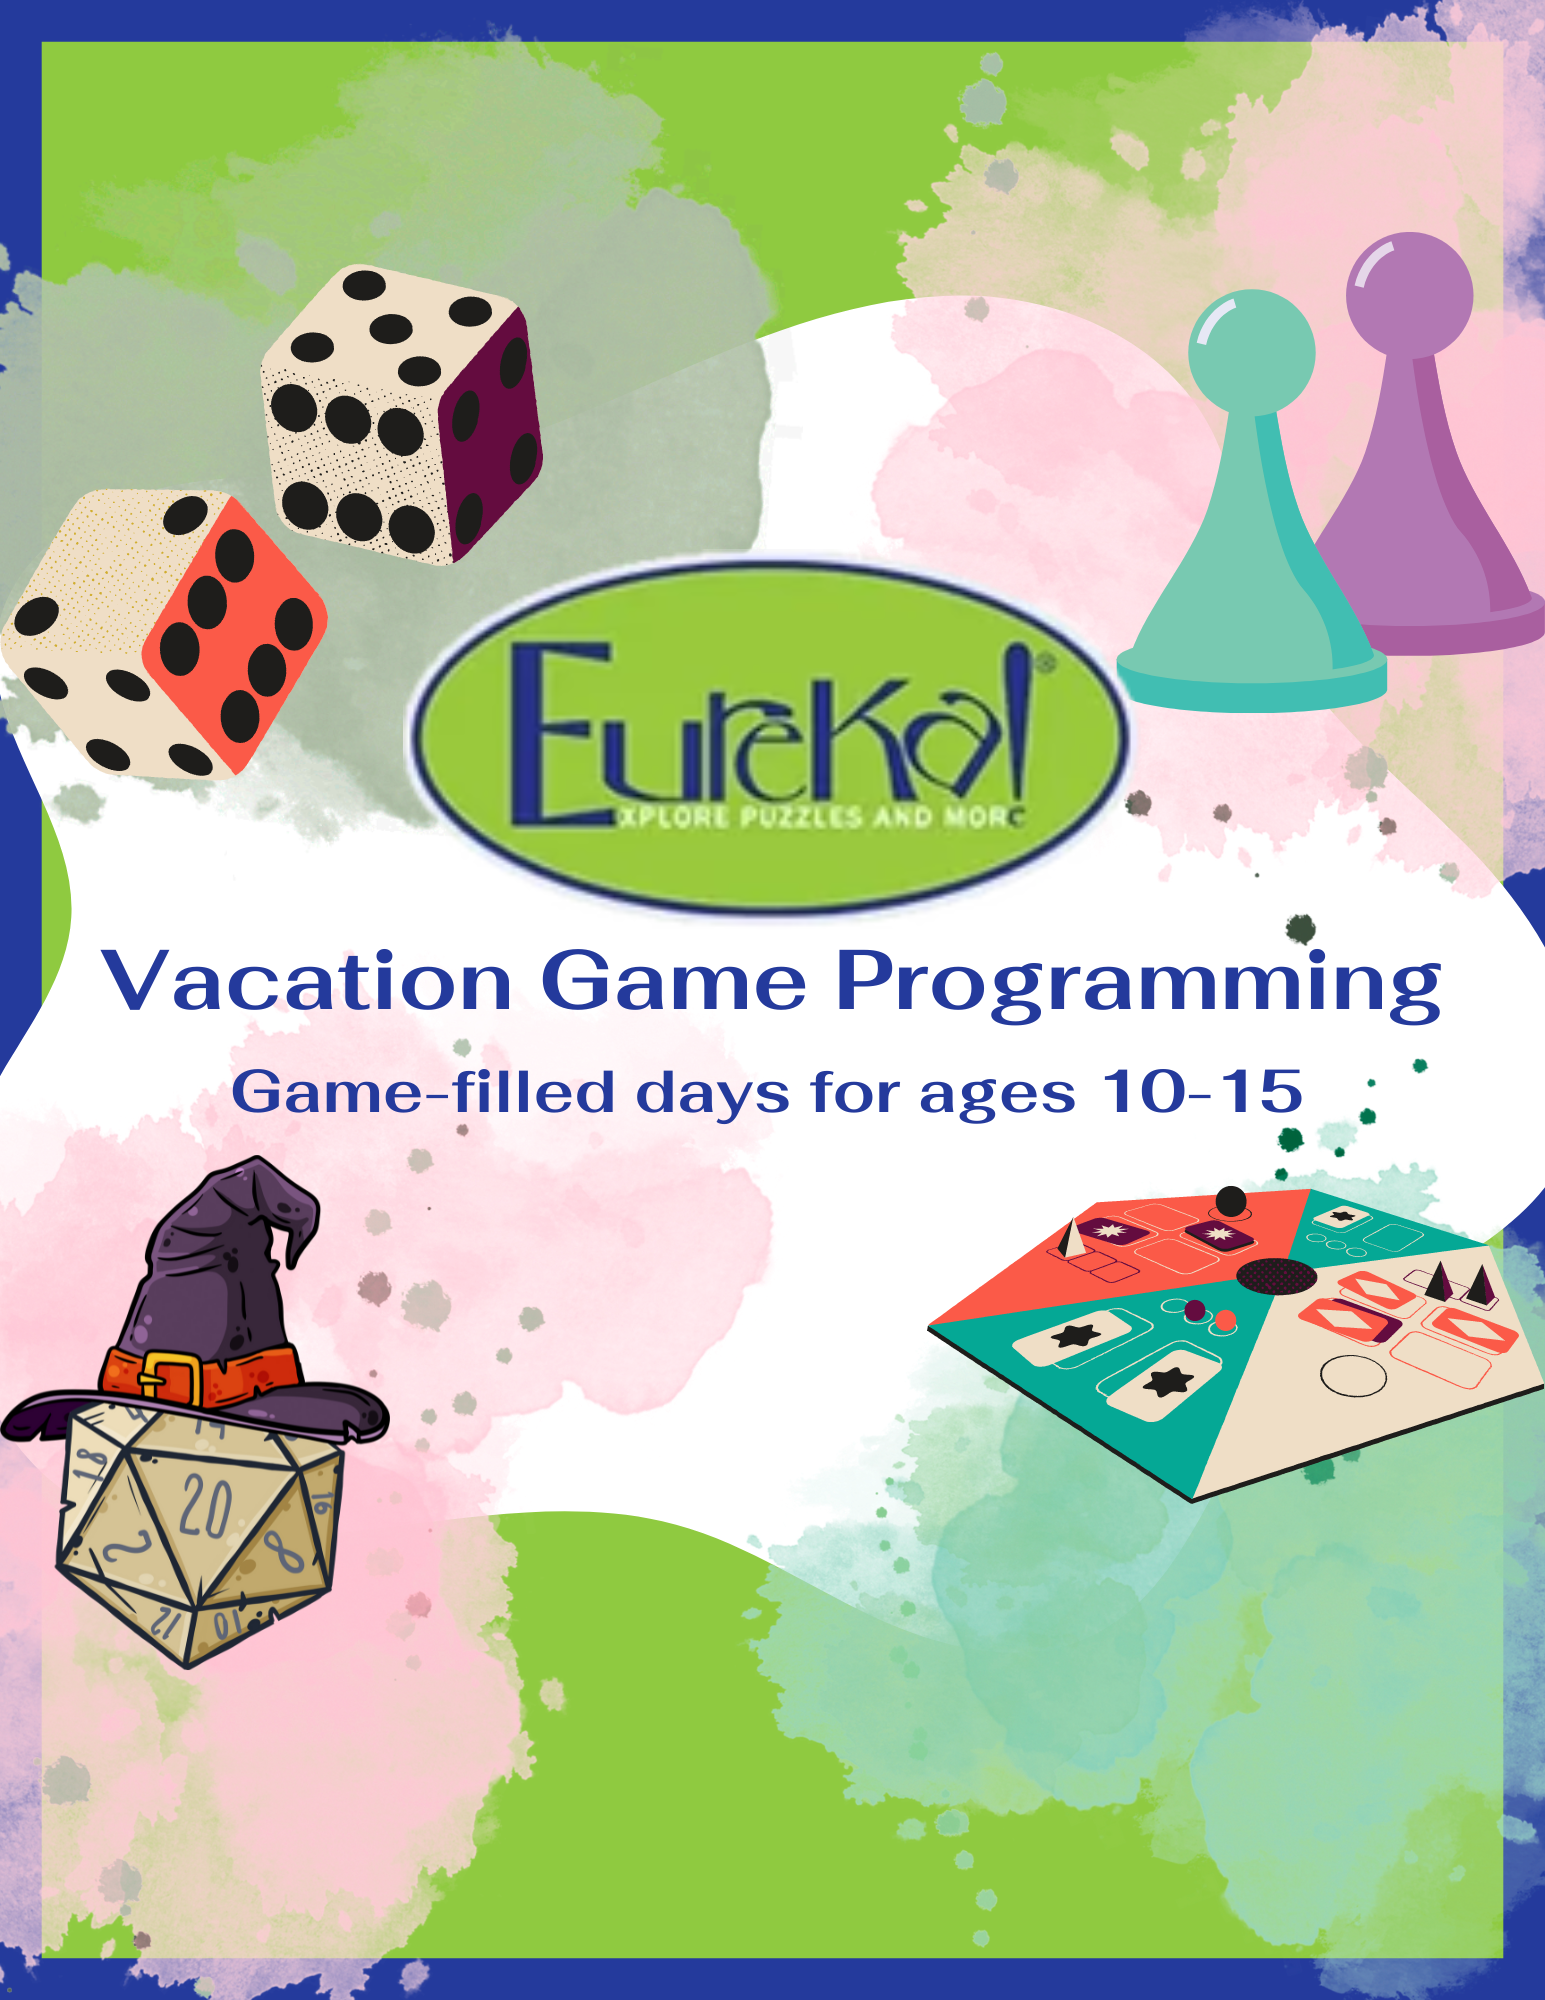 Eureka! Game Vacation Programming